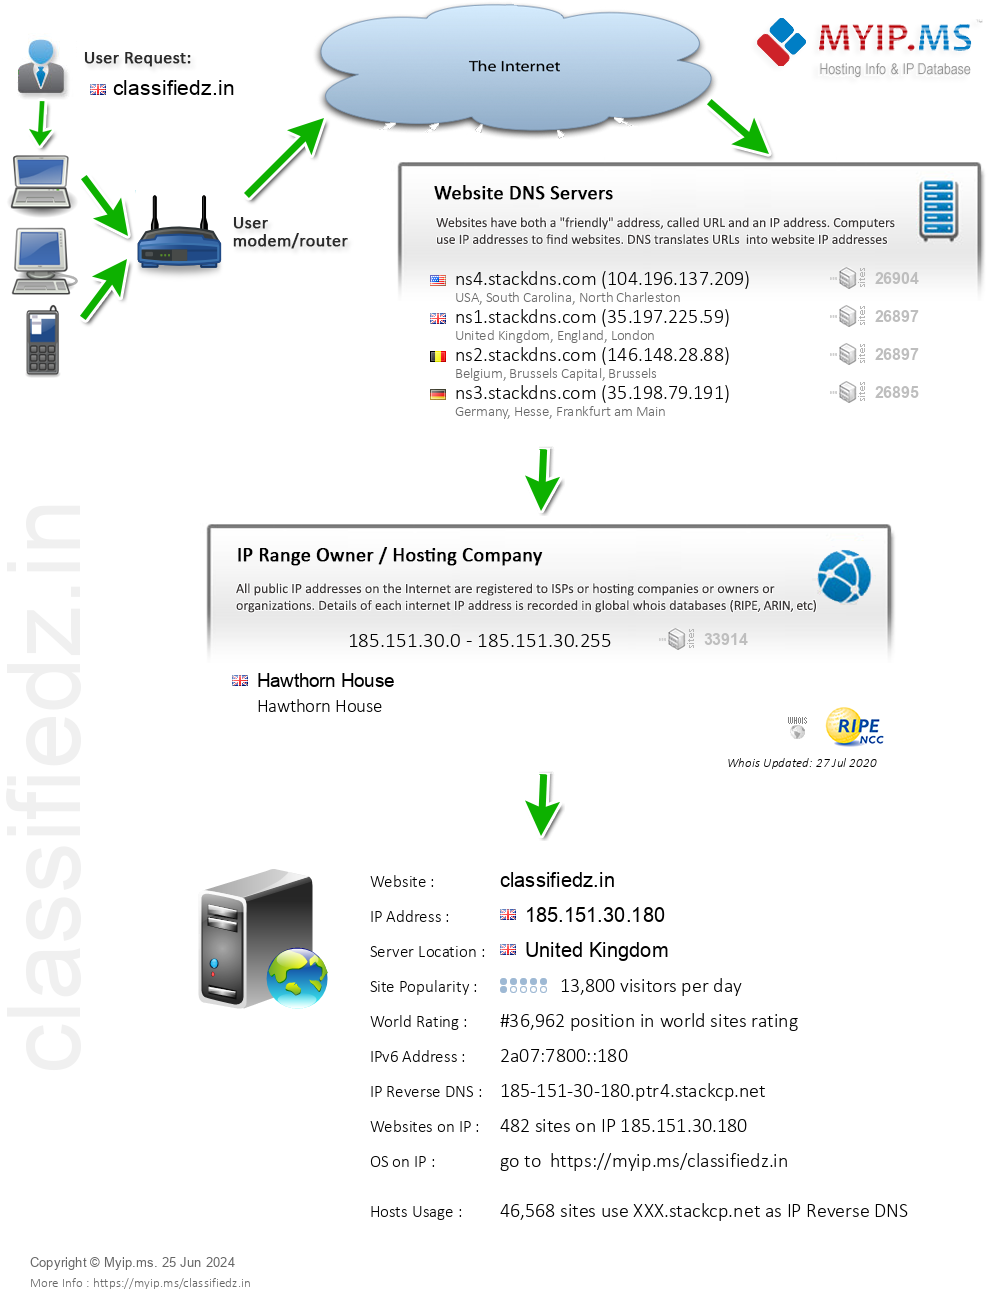 Classifiedz.in - Website Hosting Visual IP Diagram